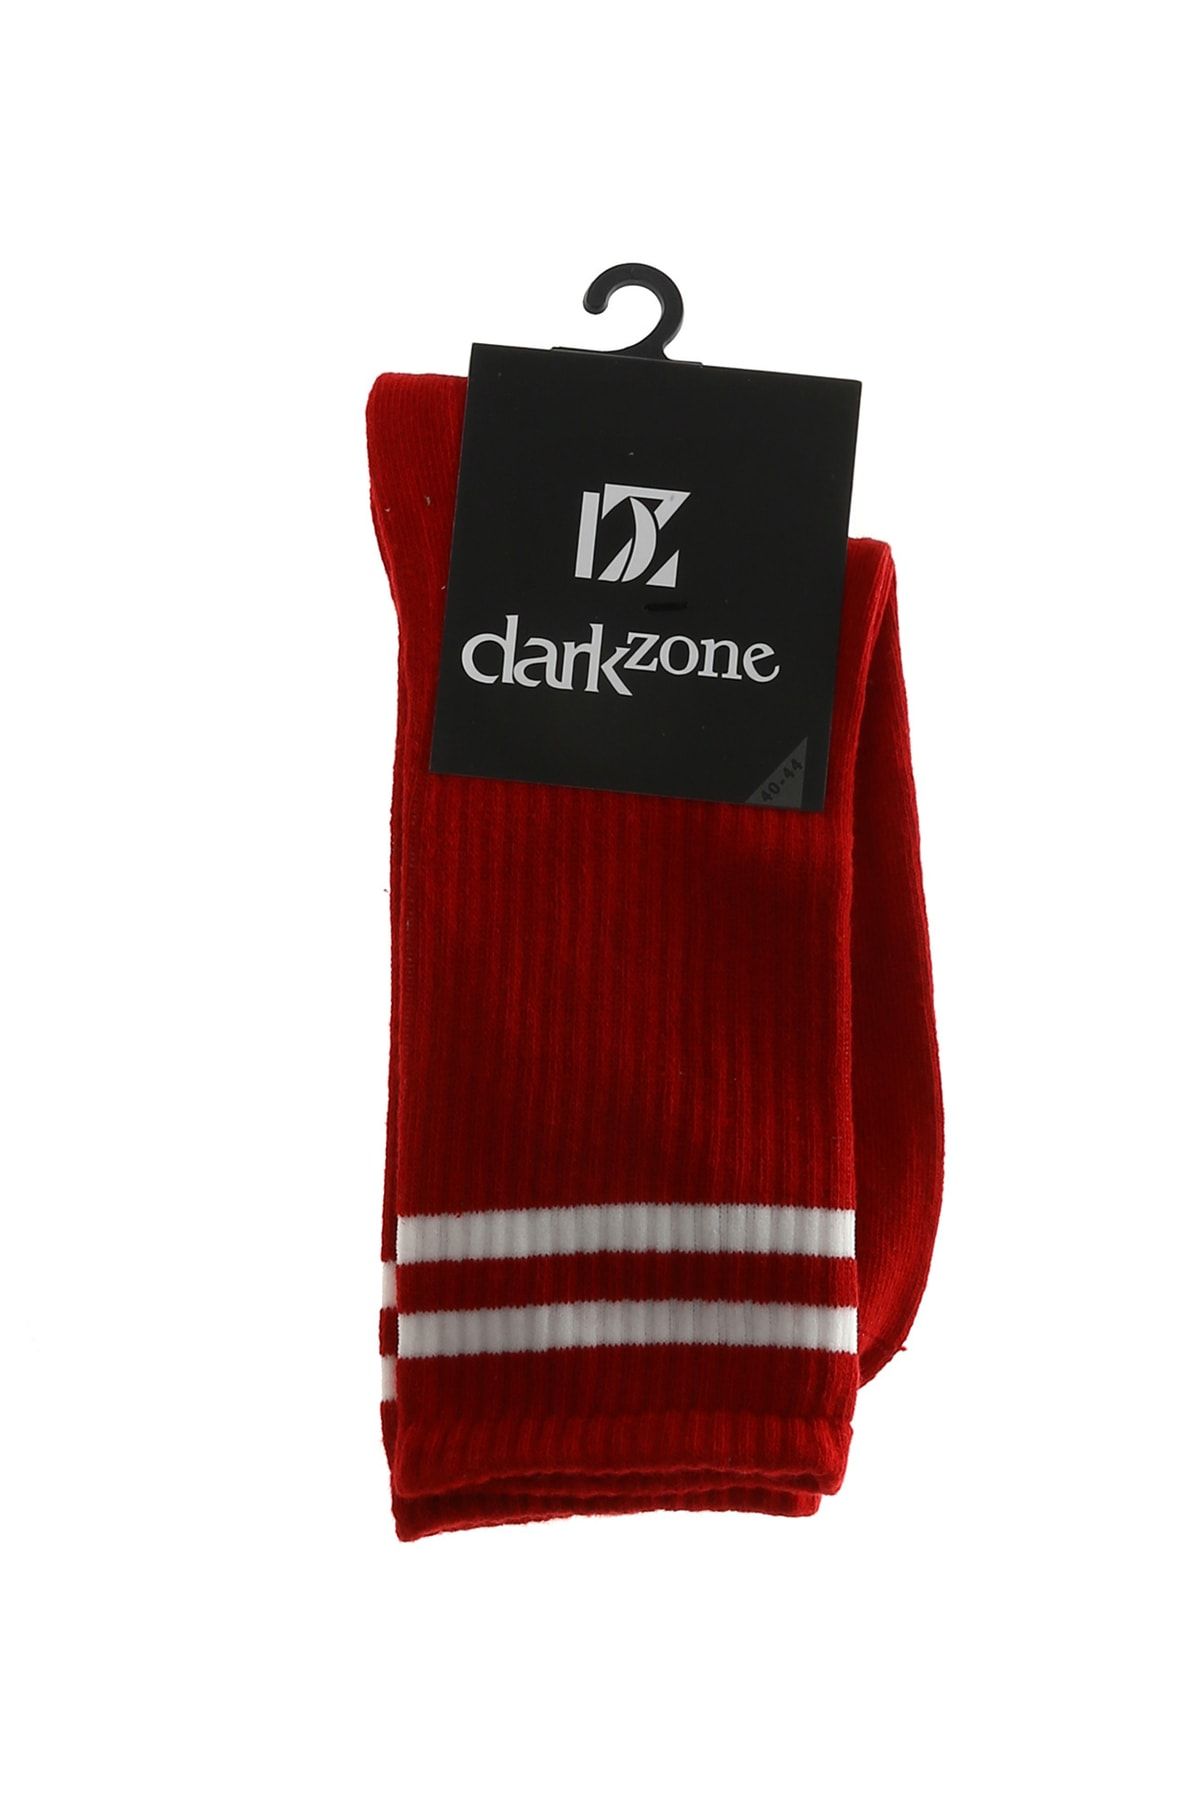 Darkzone Dzcp0036 Kırmızı Erkek Çorap